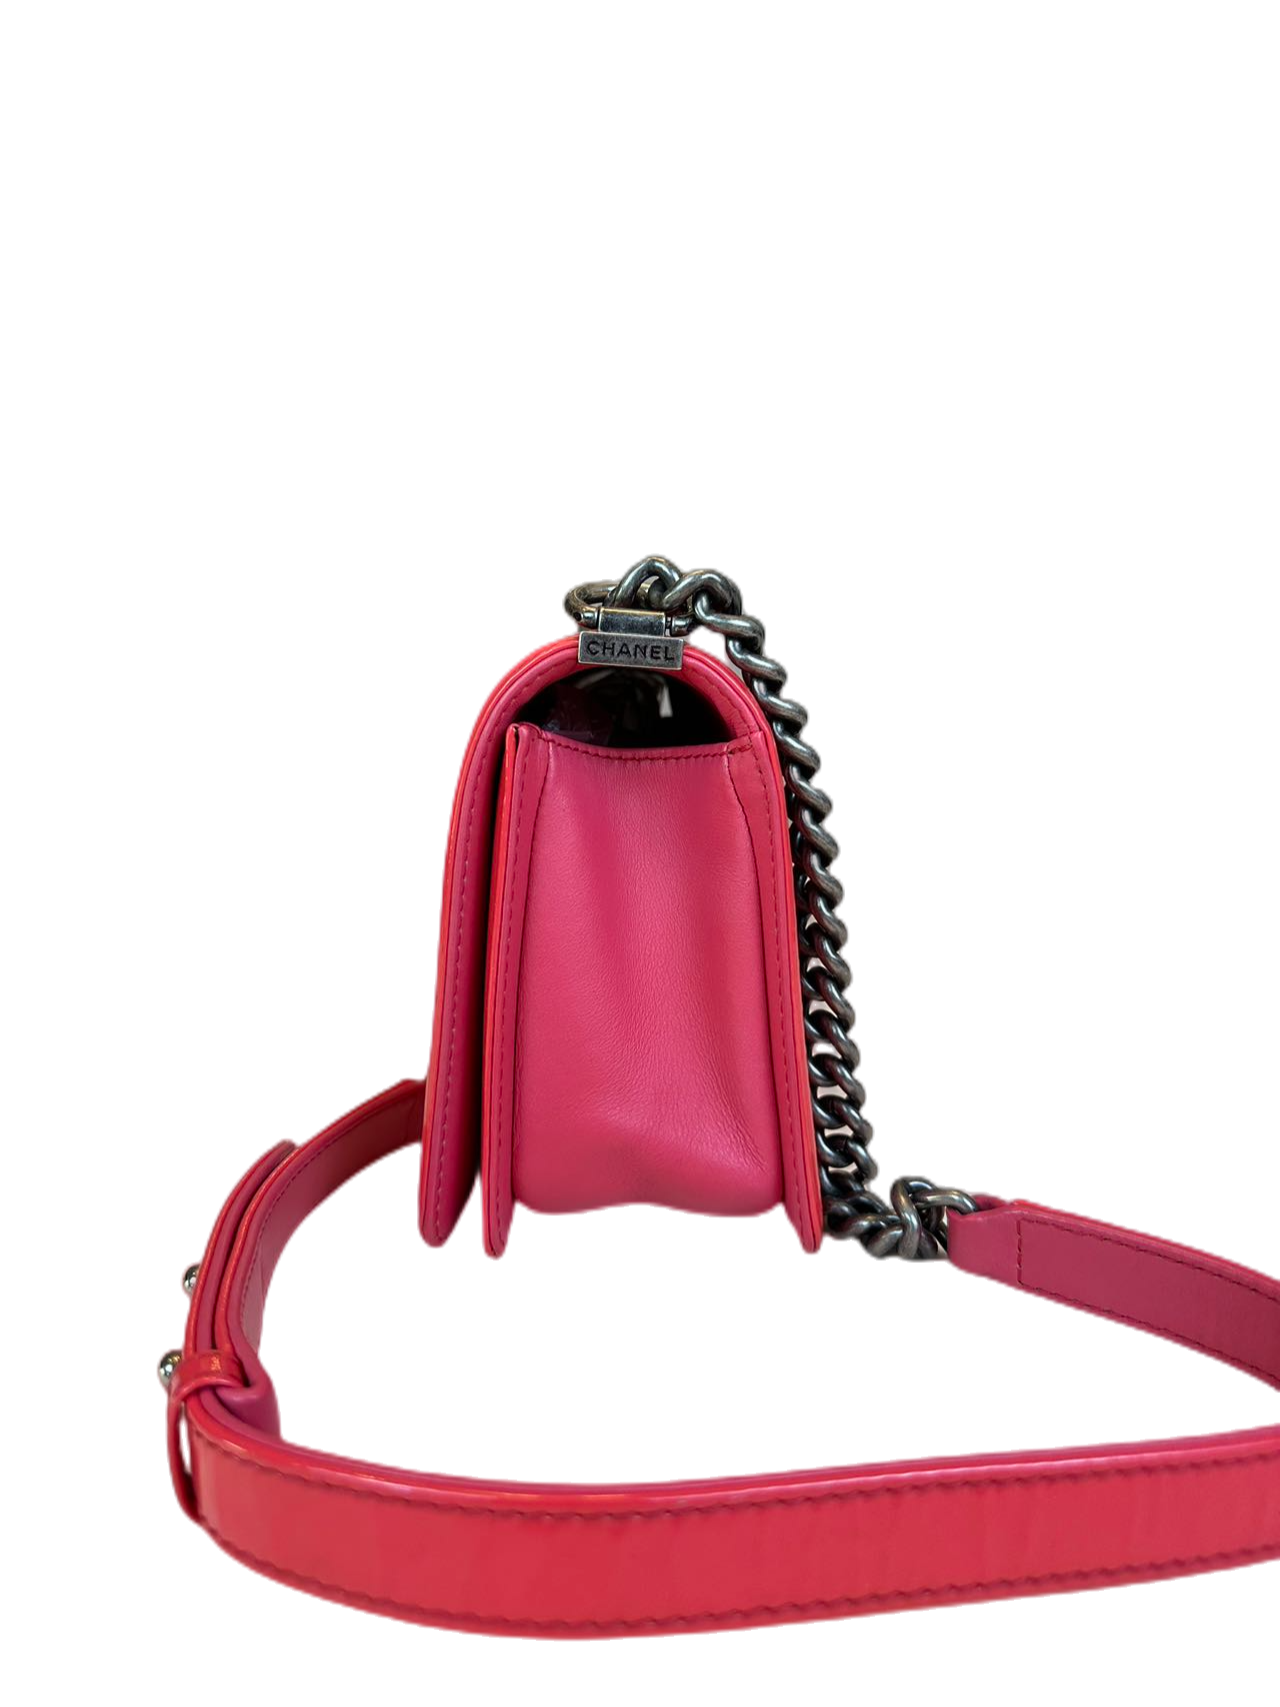 Preloved Chanel Patent Leather Boy Bag Crossbody Shoulder Bag